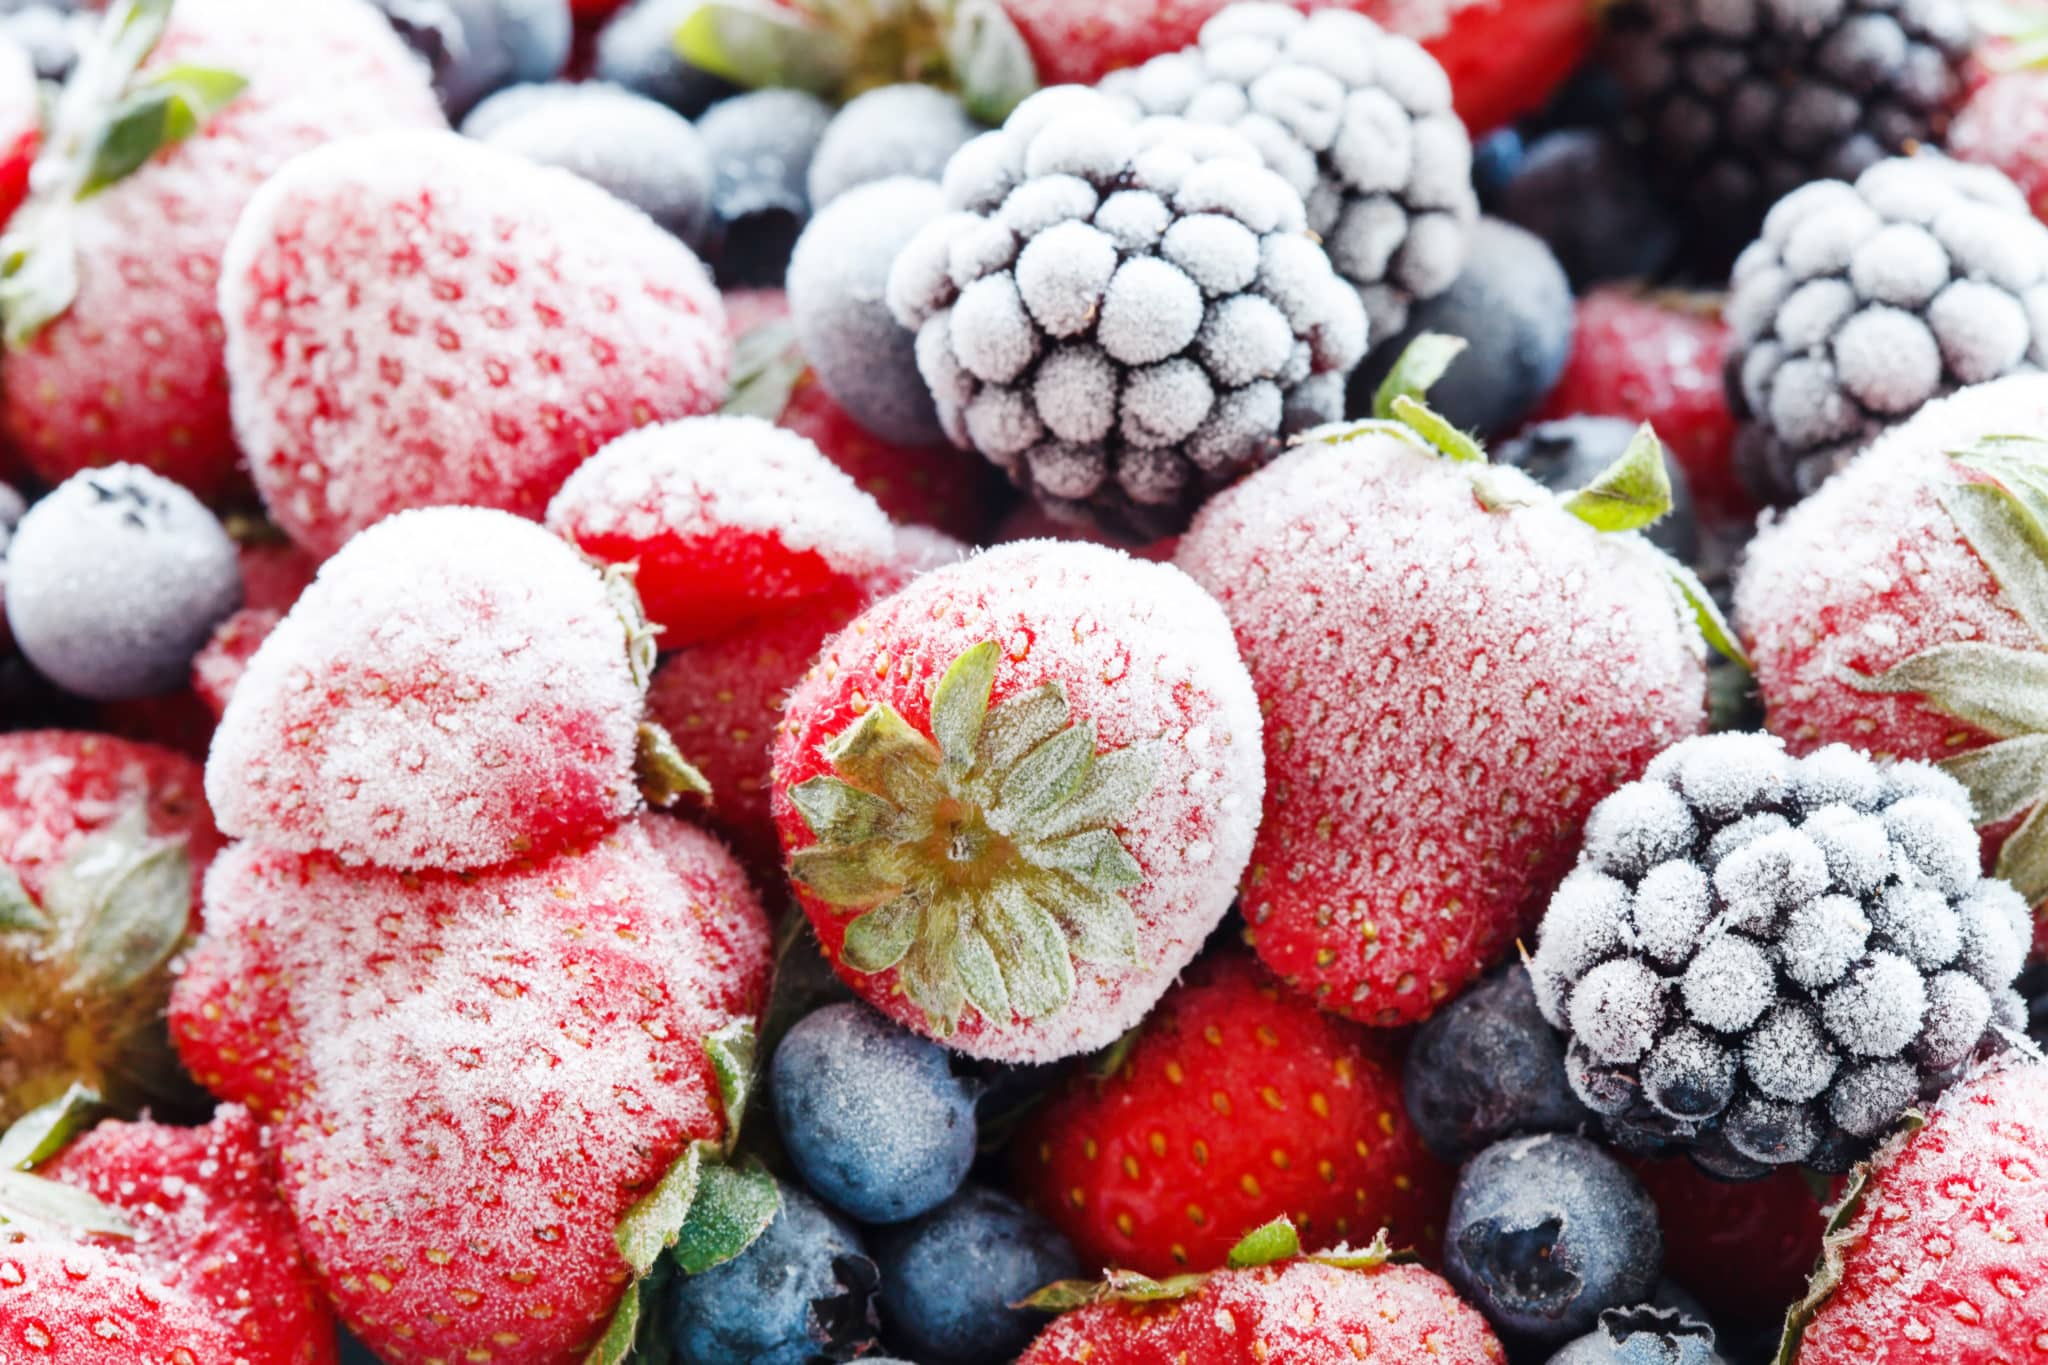 Frozen mixed berries including strawberries, blackberries, blueberries